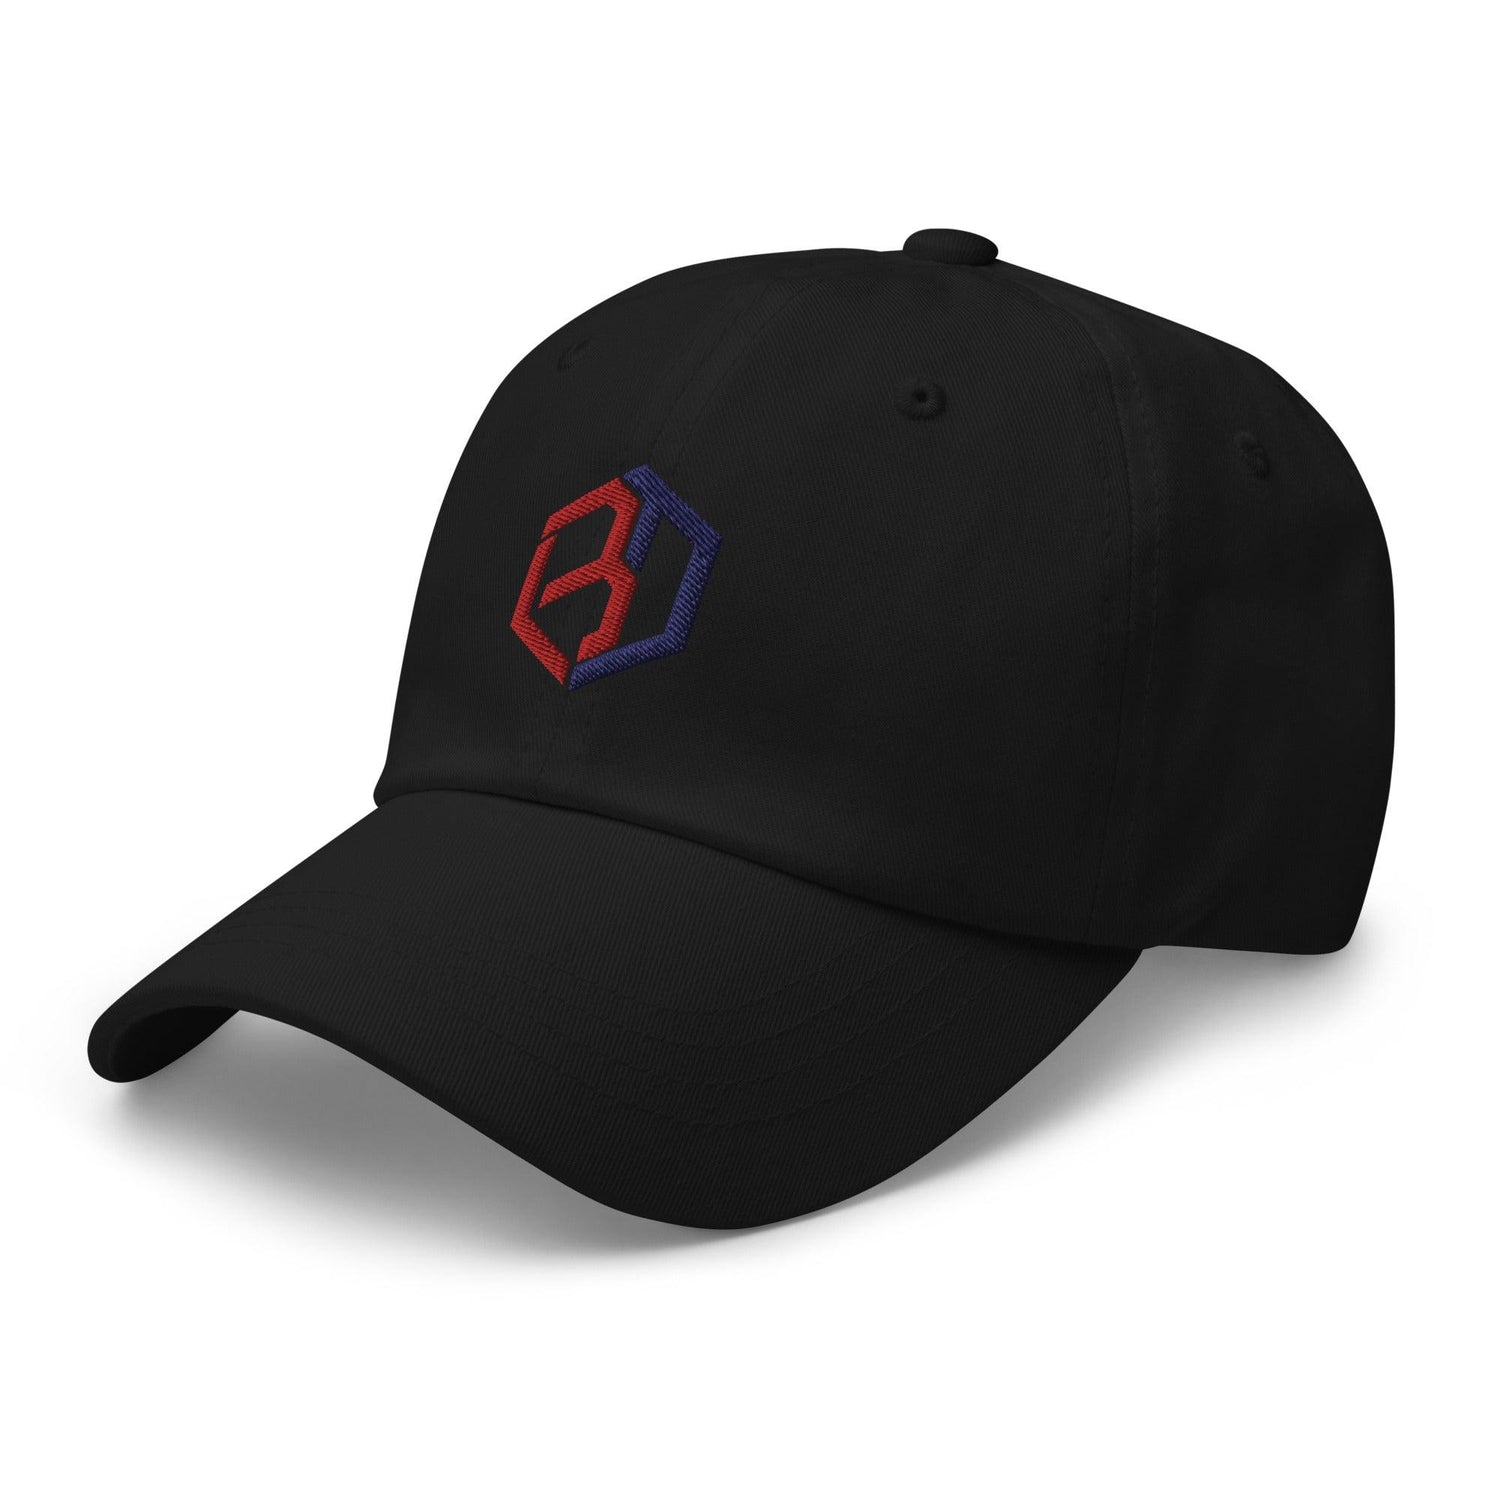 Bryan Dobzanski "Elite" hat - Fan Arch